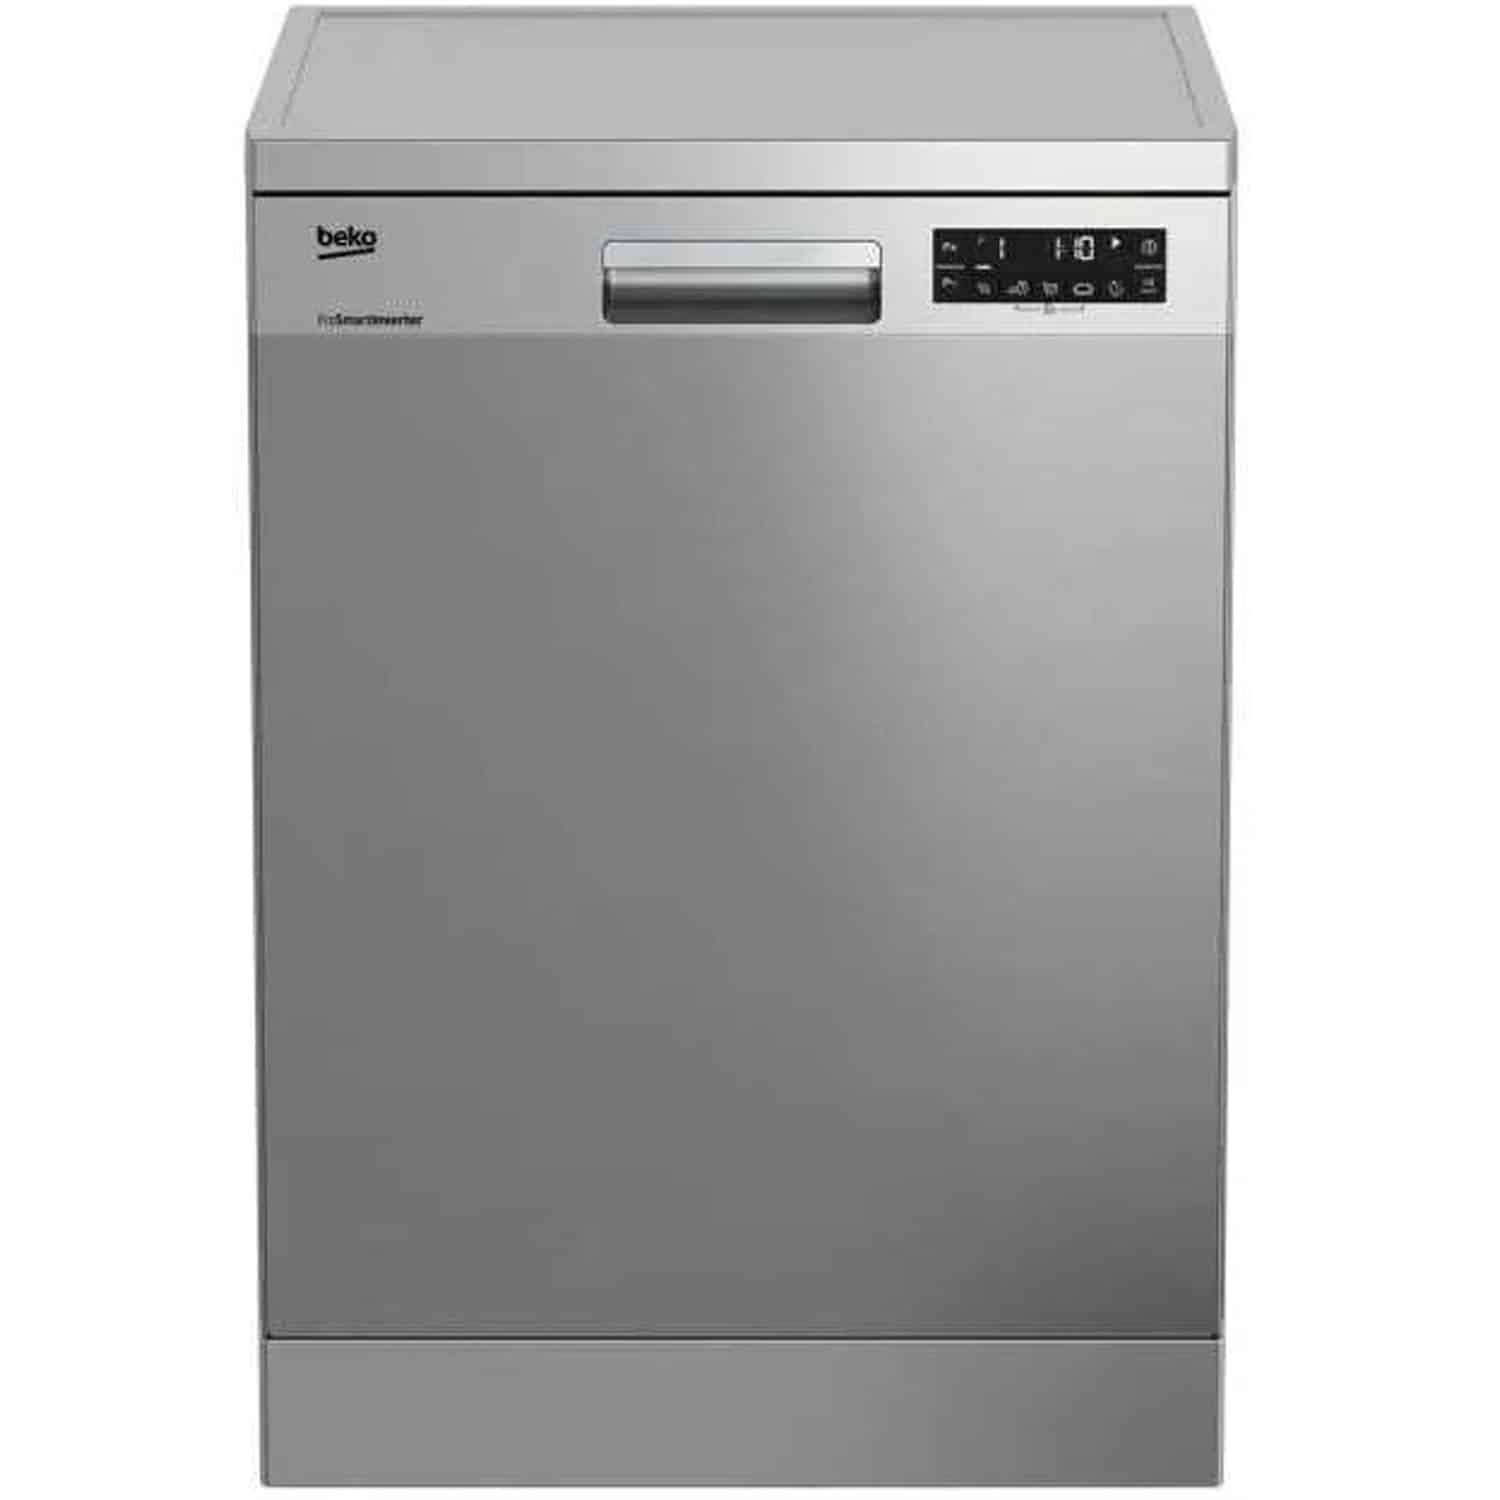 ماشین ظرفشویی بکو مدل 26424X - قیمت ظرفشویی-وب سایت رسمی بکو